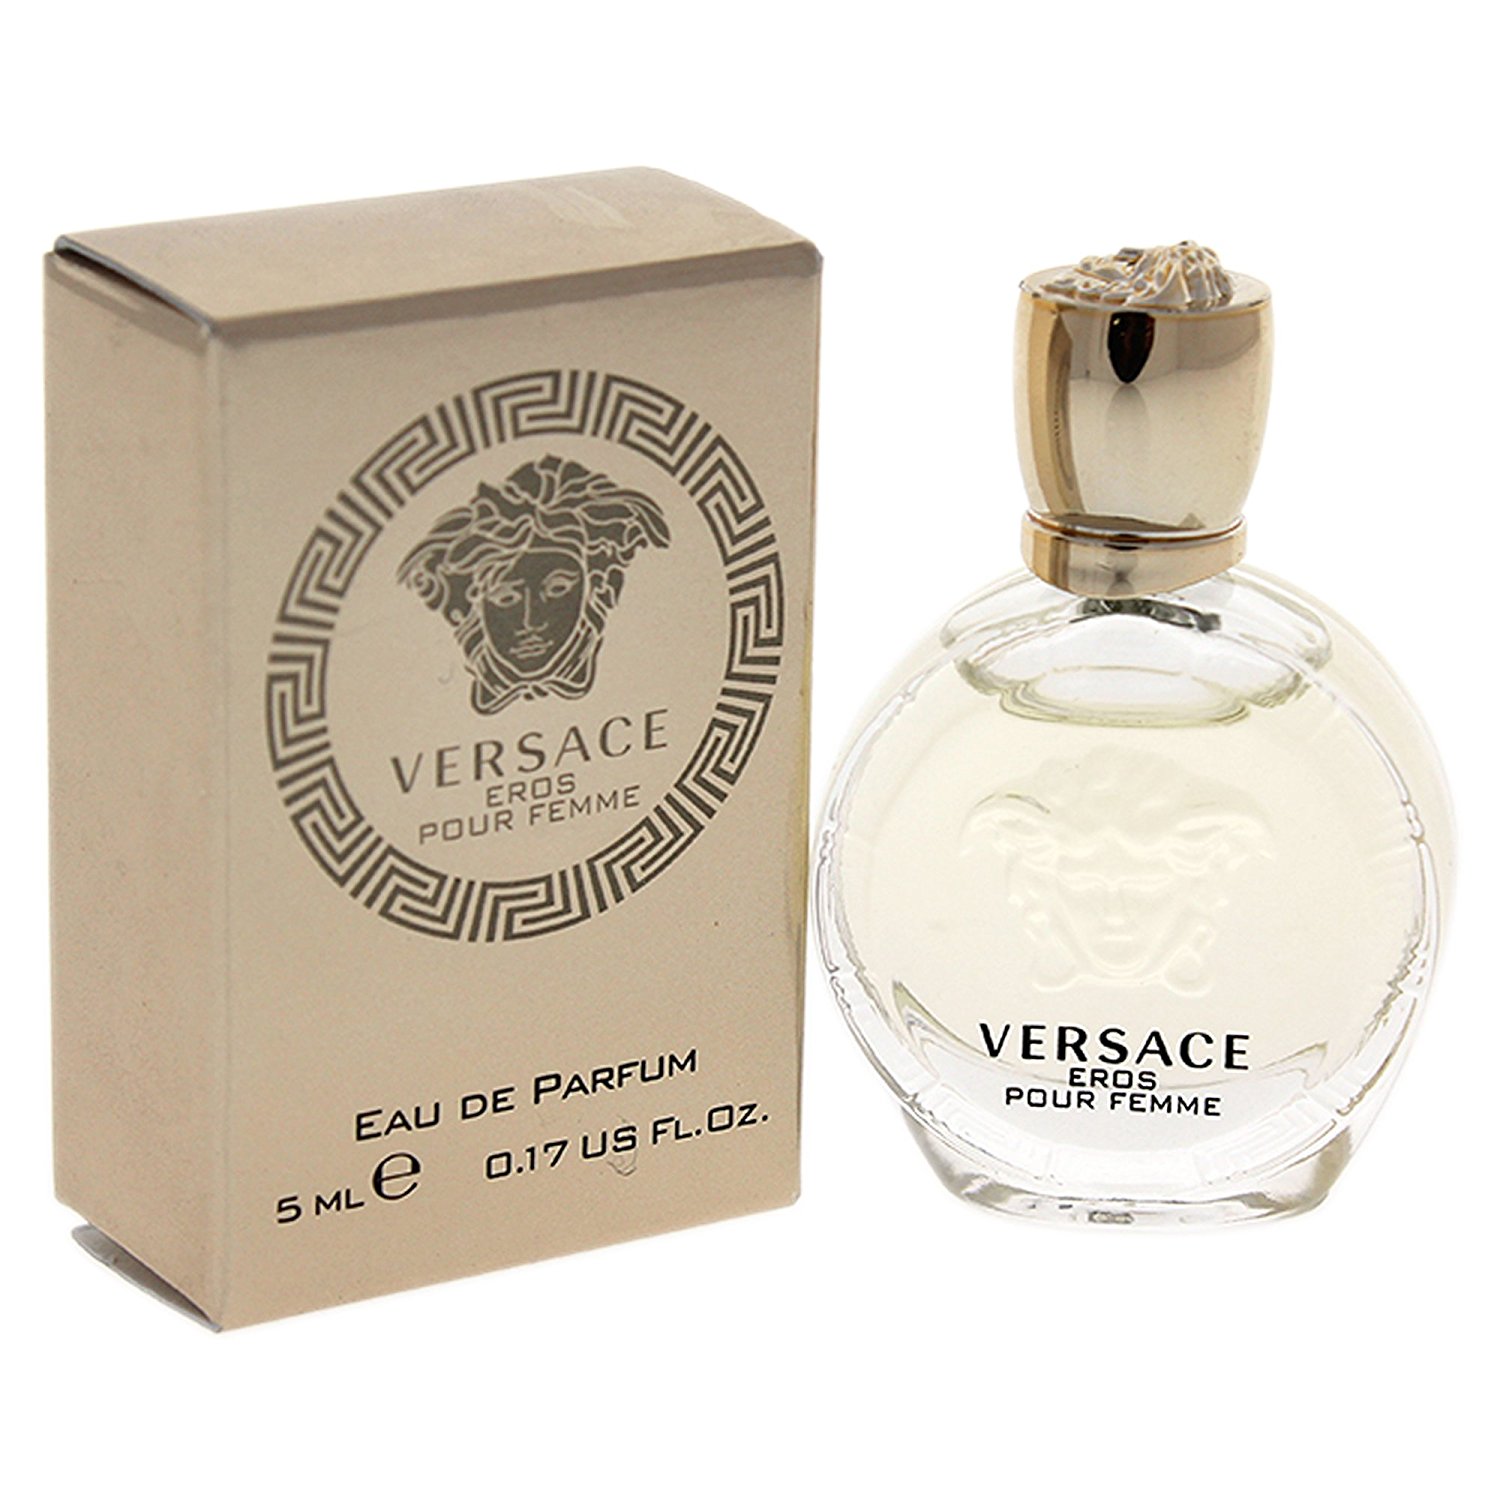 Купить Парфюмерная вода Versace, Versace Eros Pour Femme 5ml, Италия